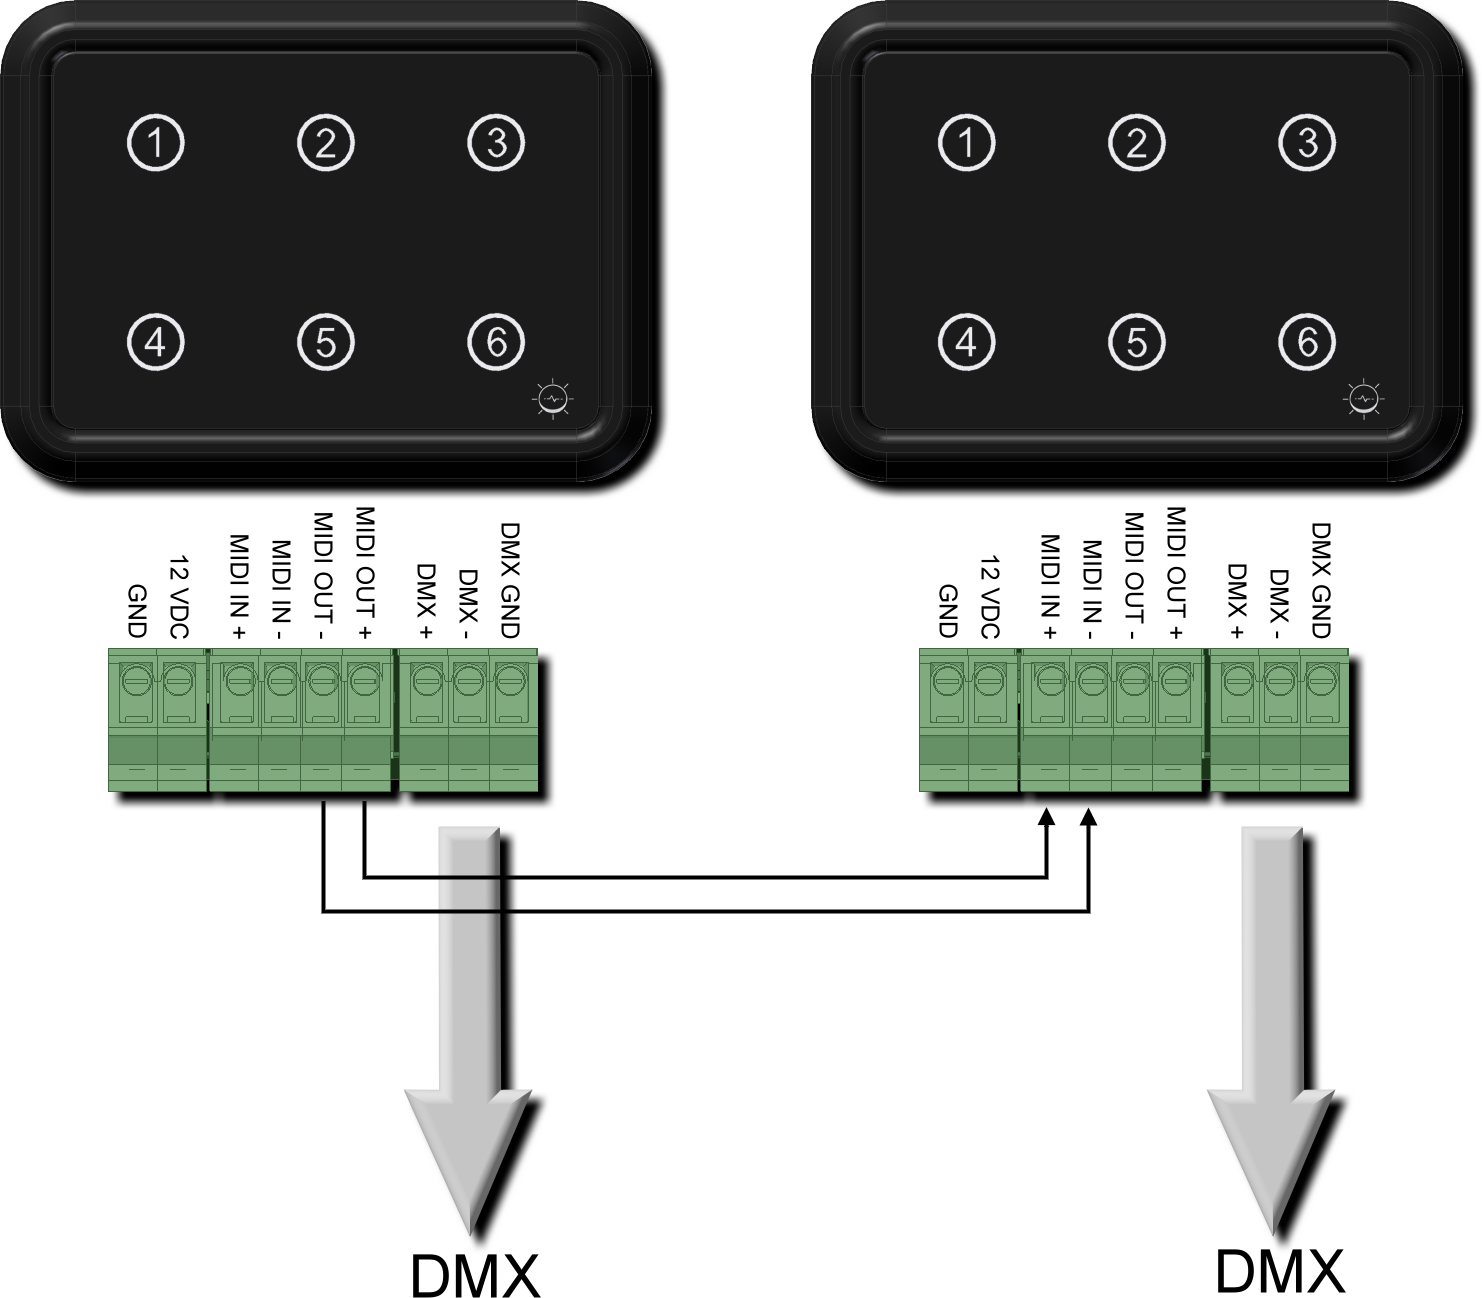 Le configurazioni che abbiamo visto in questi 4 punti, prendono in considerazione solo dispositivi DMXPen WTI, ma siccome il link che determina il controllo della riproduzione avviene attraverso la